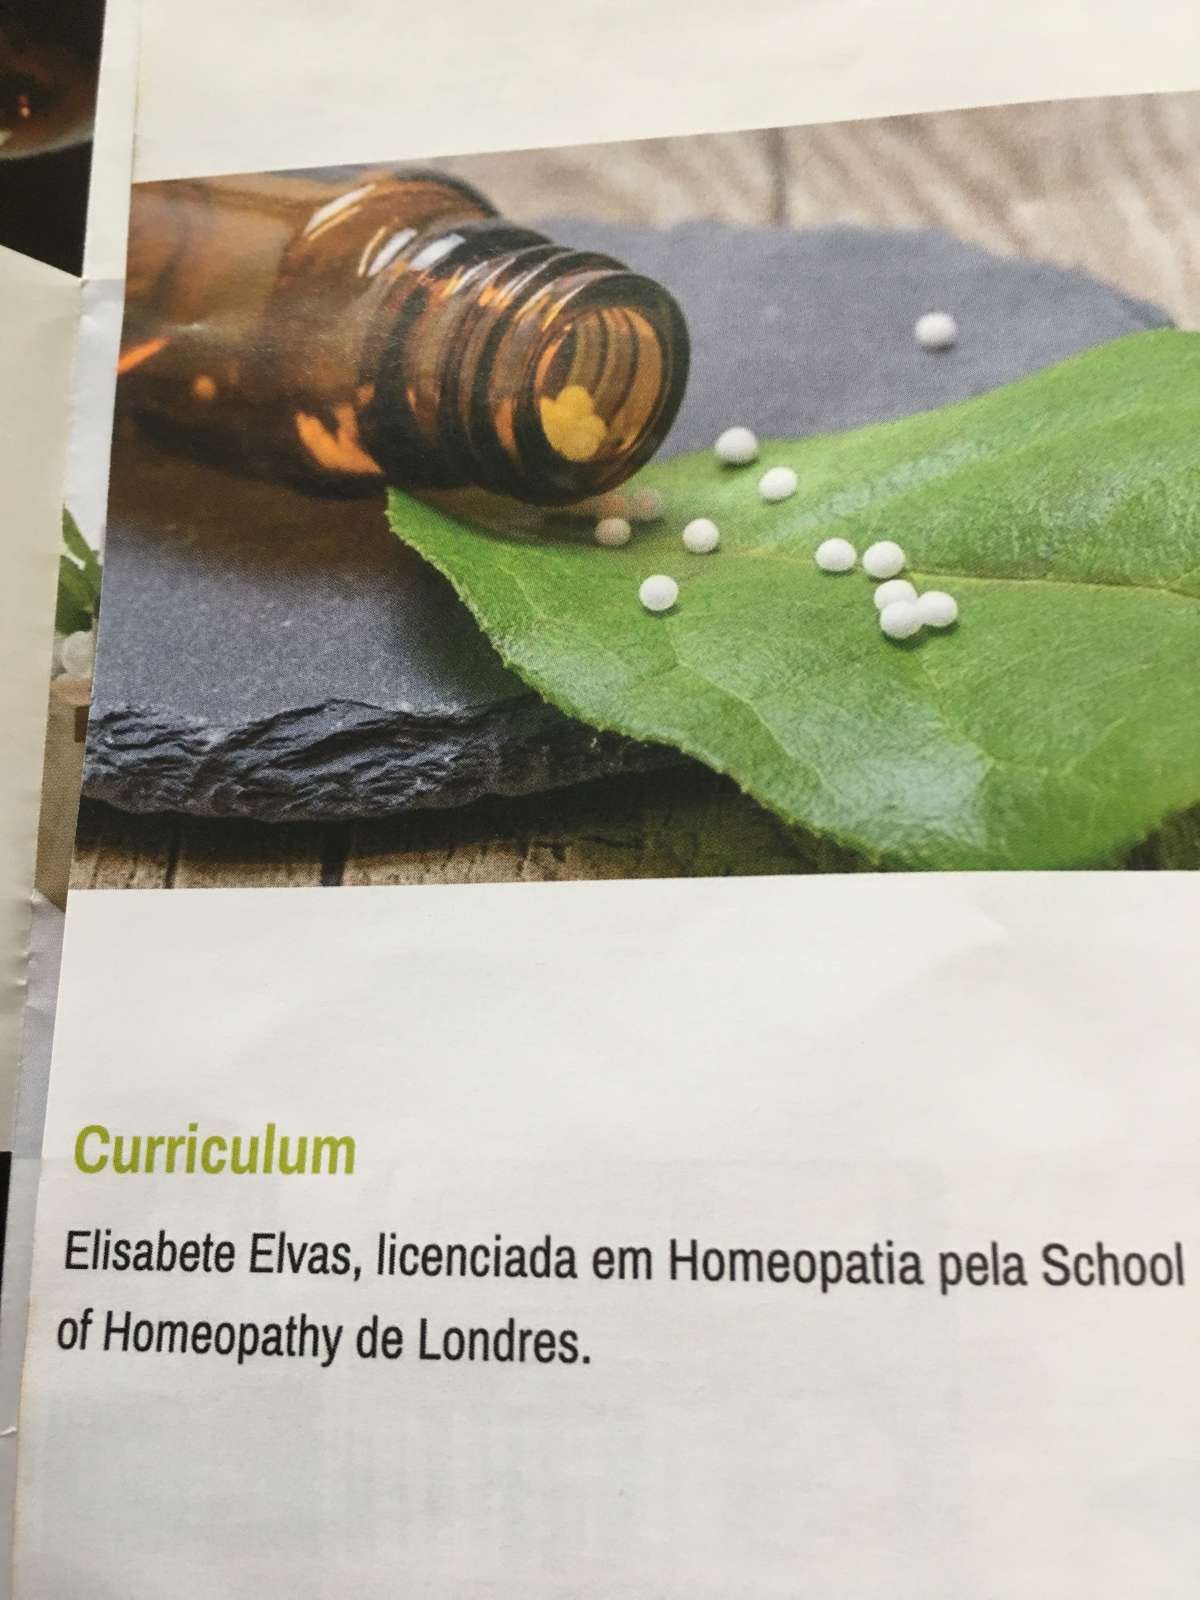 Elisabete Elvas - Lisboa - Homeopata